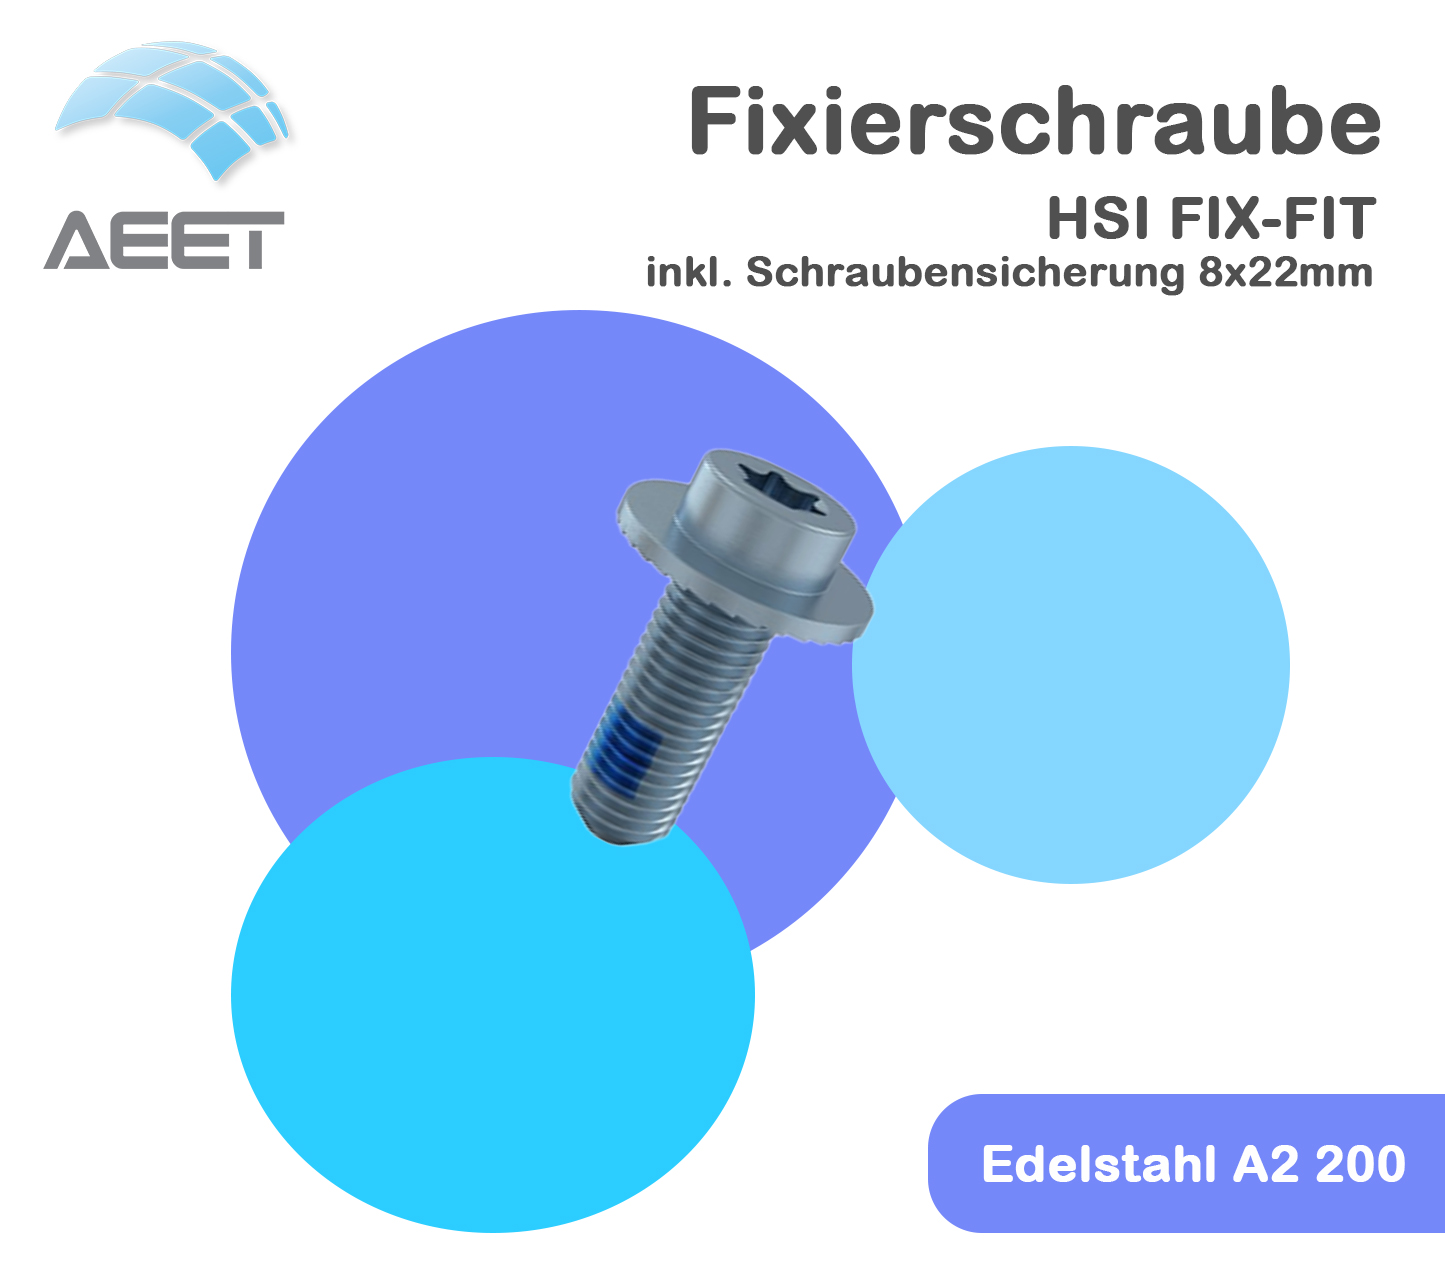 Fixierschraube HSI FIX-FIT inkl. Schraubensicherung 8x22mm